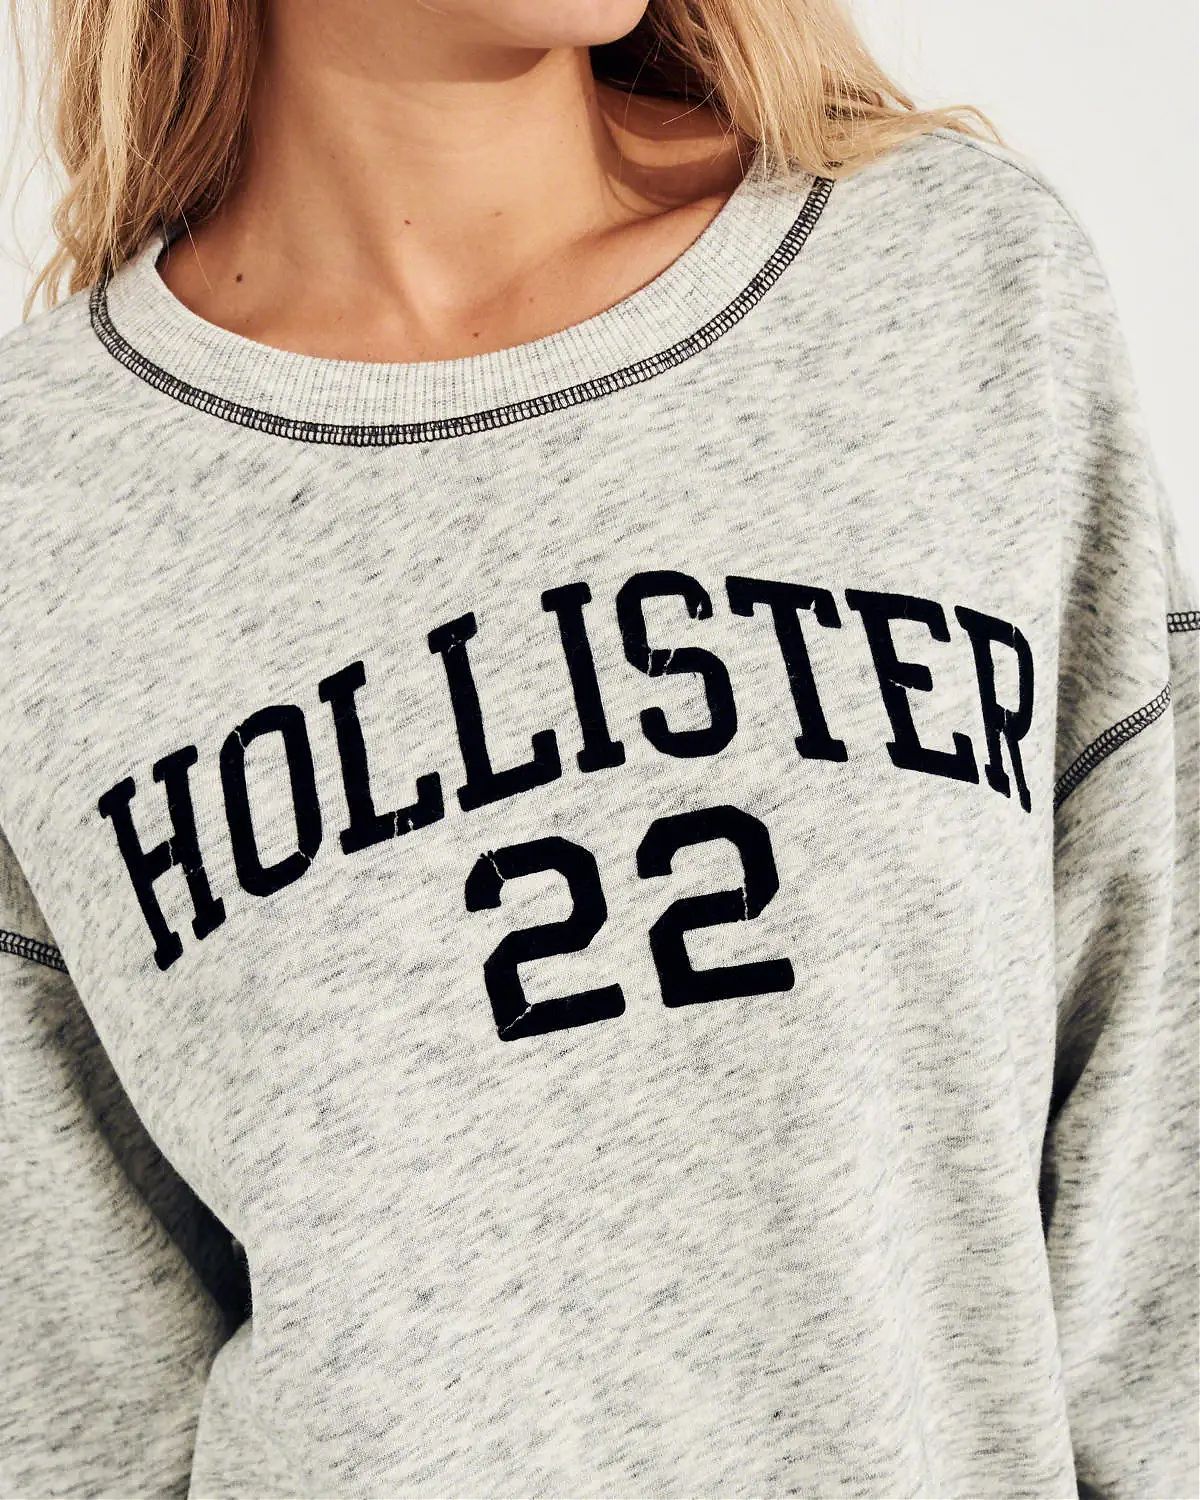 Женская толстовка свитшот Hollister без капюшона серого цвета с